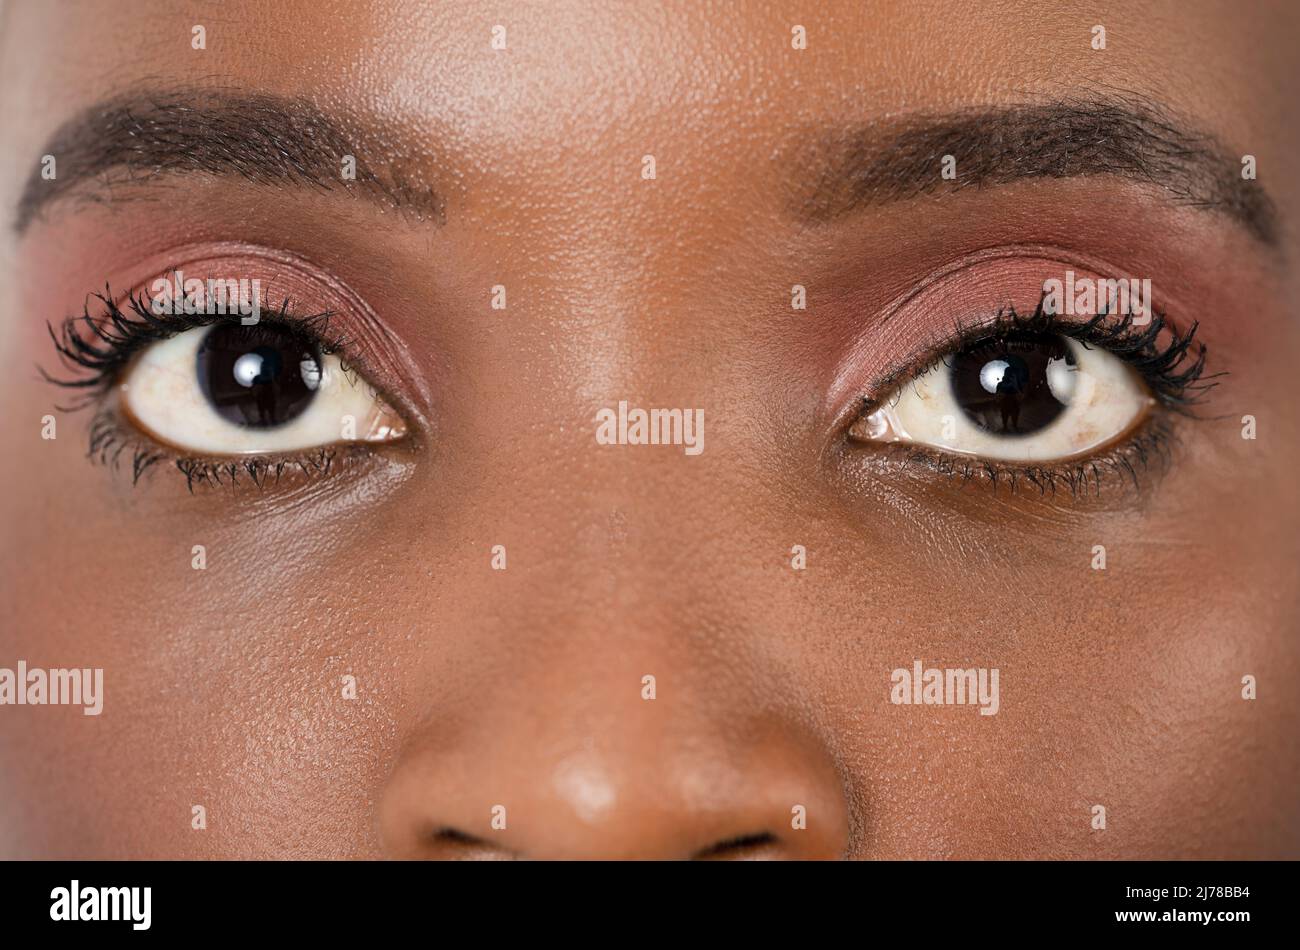 Primo piano, foto profulate di una pelle scura occhio femminile, iride, pupilla, ciglia oculare, coperchi occhi. Foto di alta qualità Foto Stock